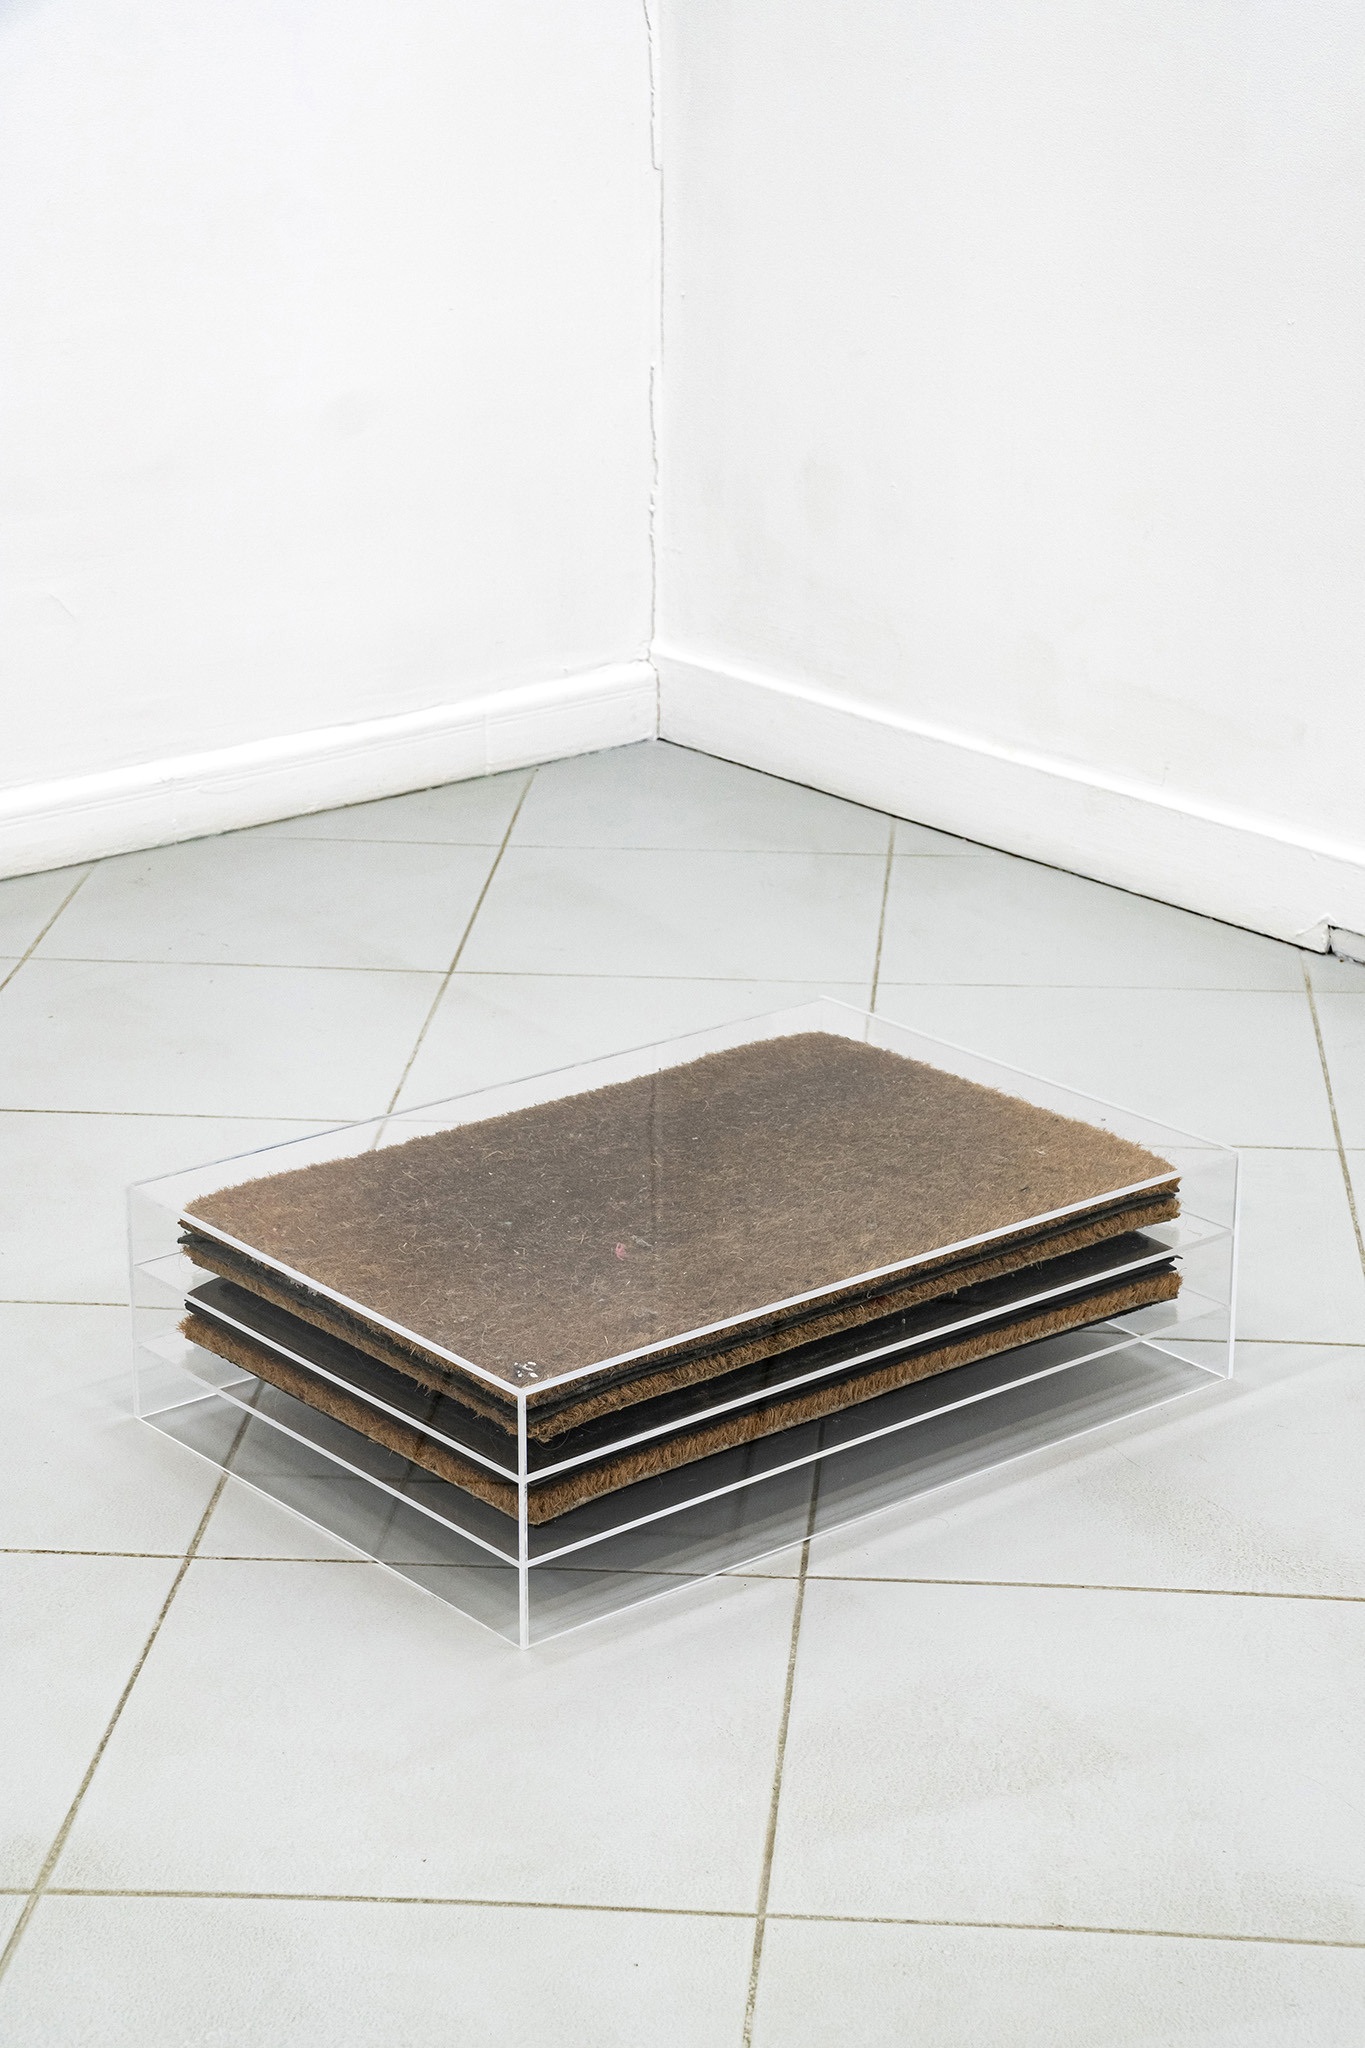 Jan Domicz, Neighbors’ doormats collected via exchange, 2024, plexiglass, doormats, 70 x 18 x 50 cm